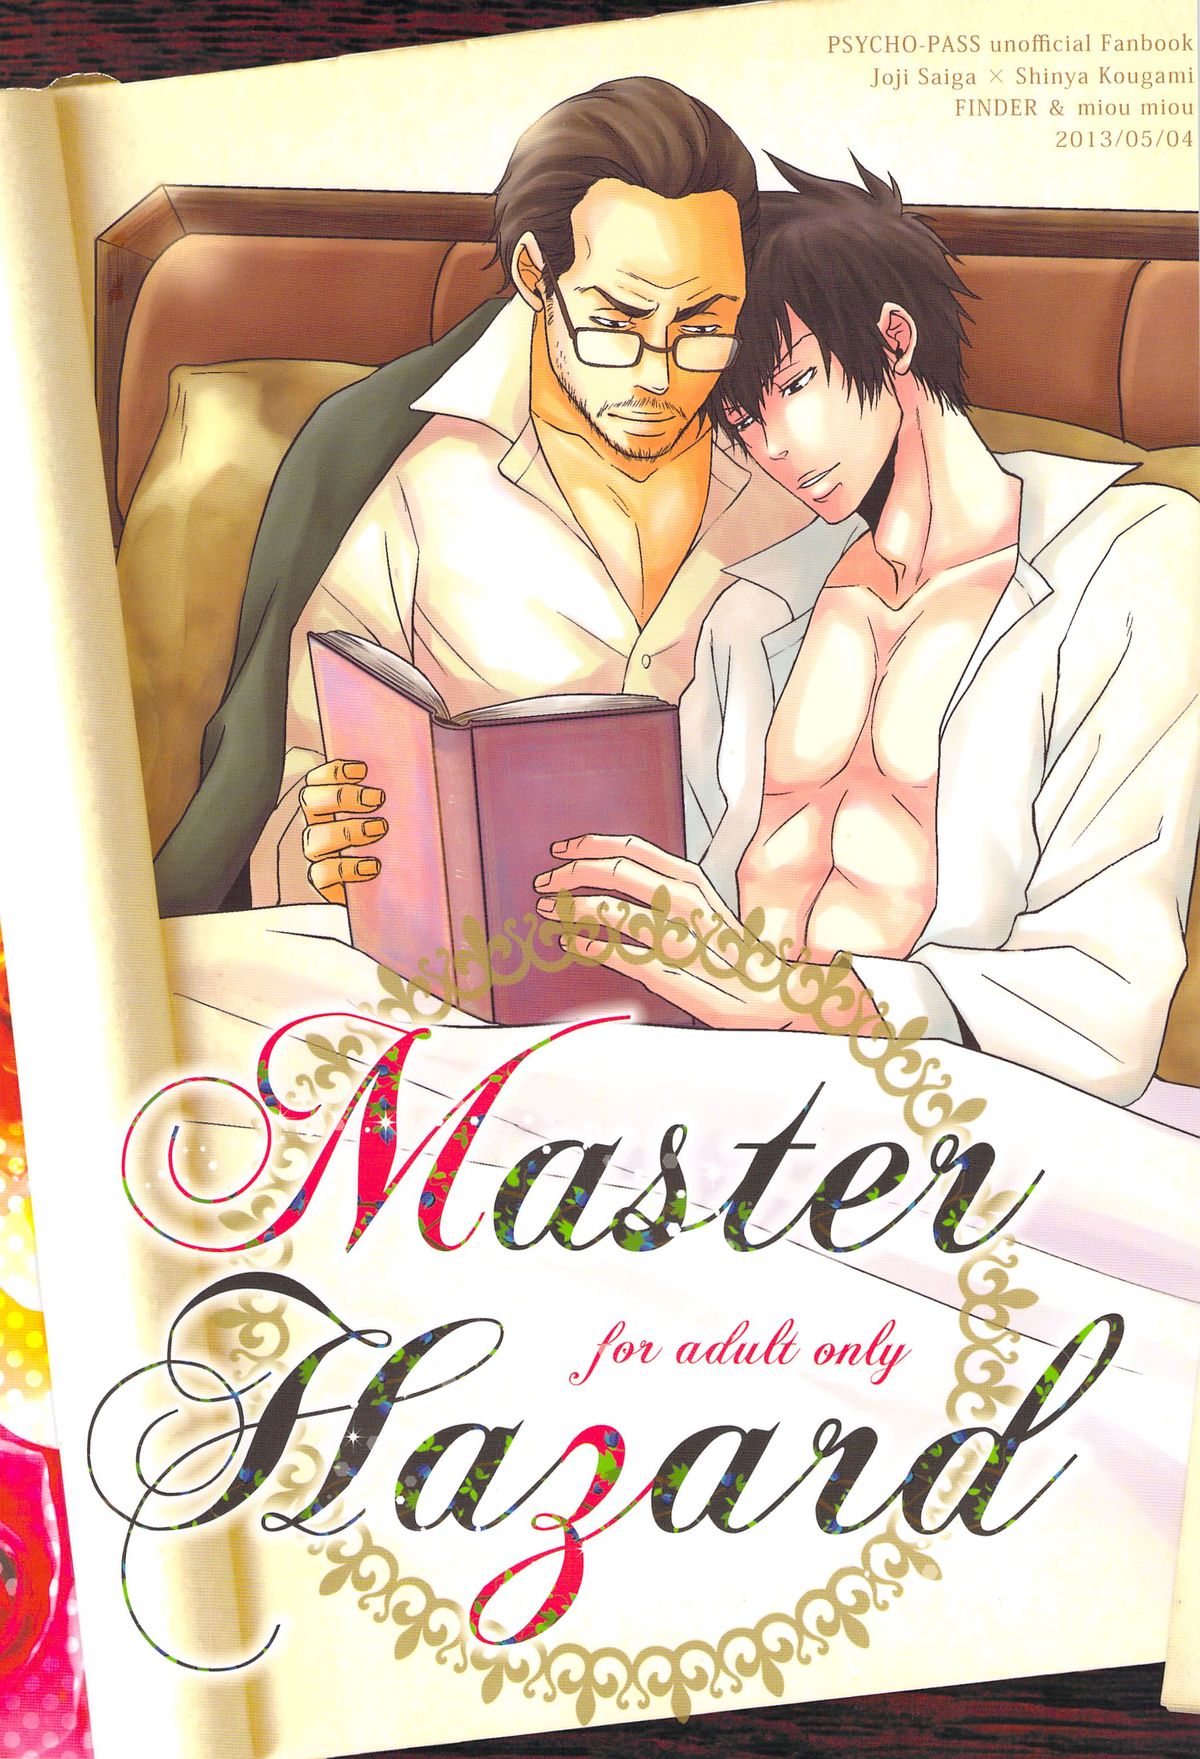 [FINDER, miou miou (Mukai Yuuya, Nana)] Master Hazard (Psycho-Pass) page 1 full